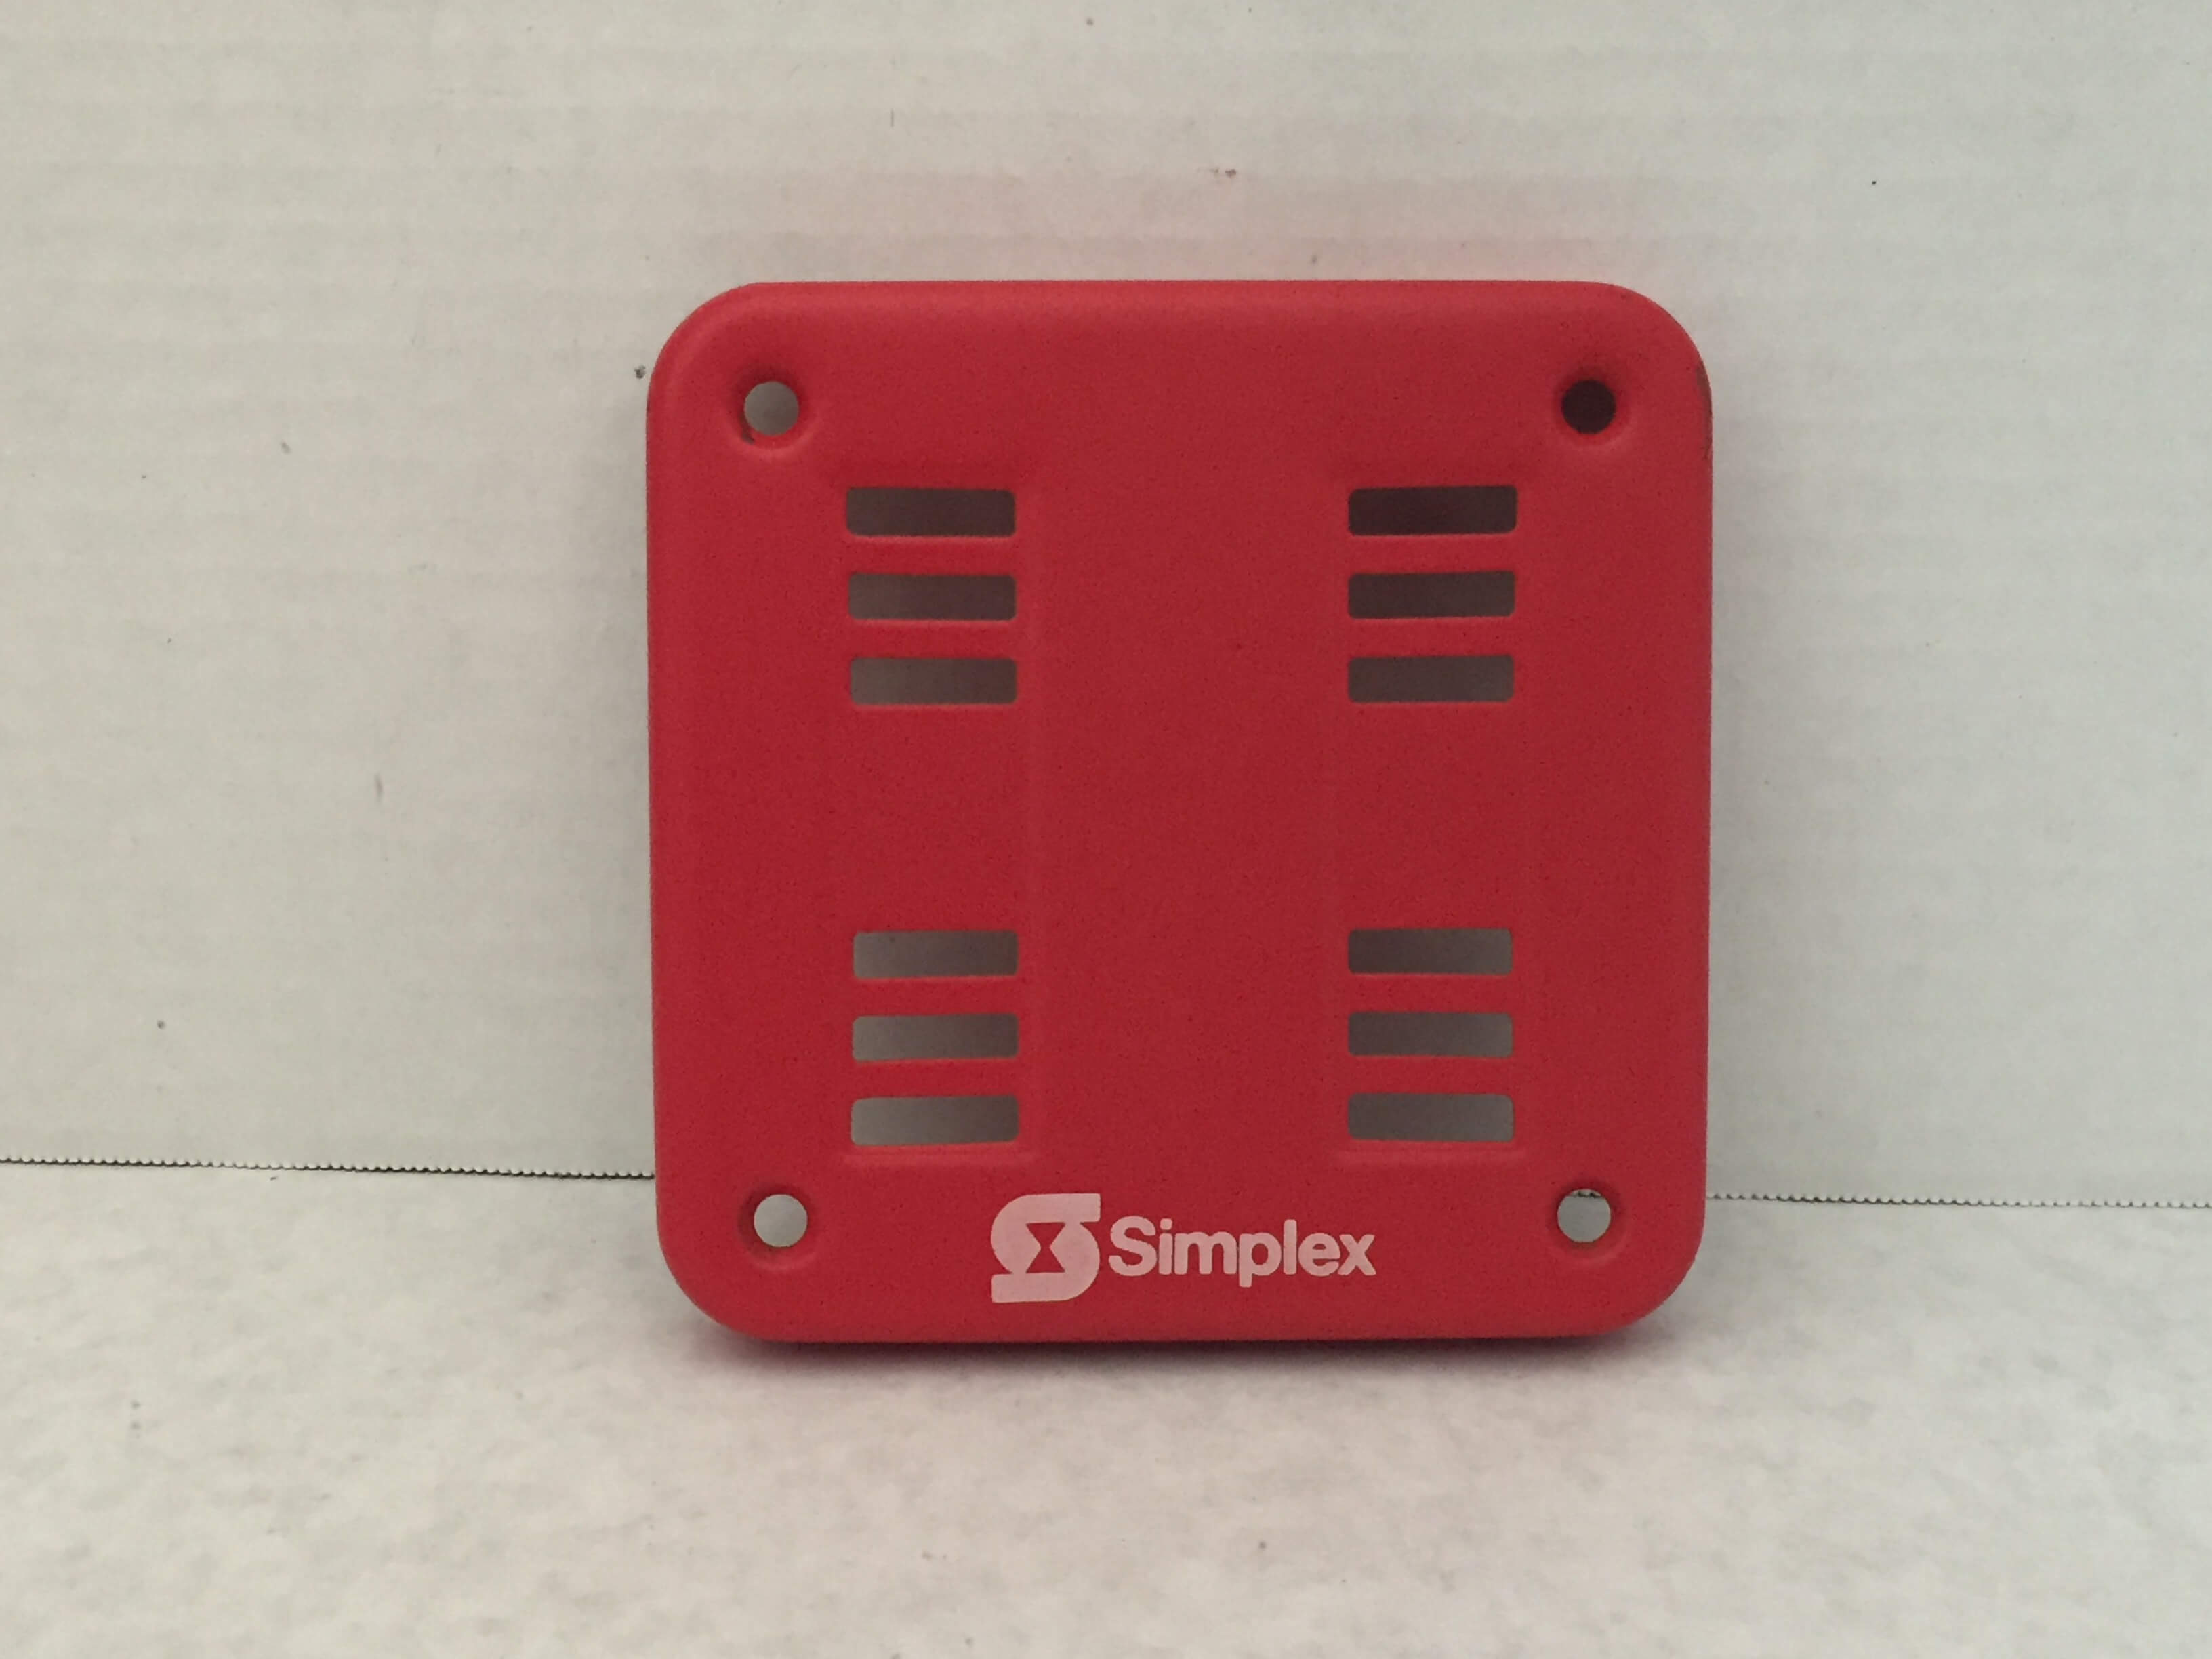 Simplex 2901-9838 - FireAlarms.tv - jjinc24/U8oL0's Fire Alarm ...